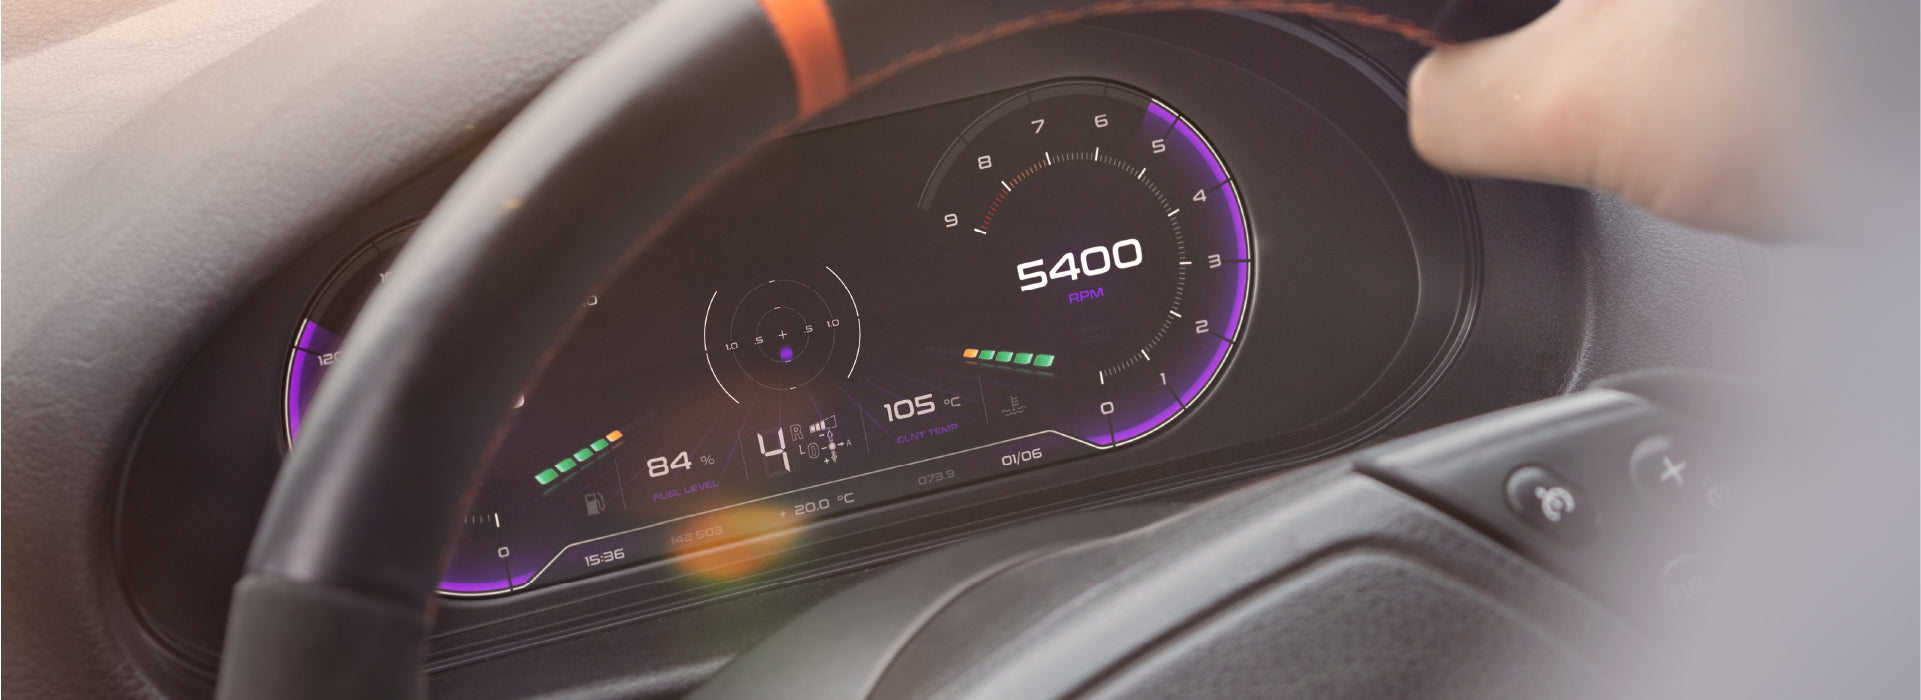 Retrofitting a Digital Cluster into Your BMW 3 Series E46